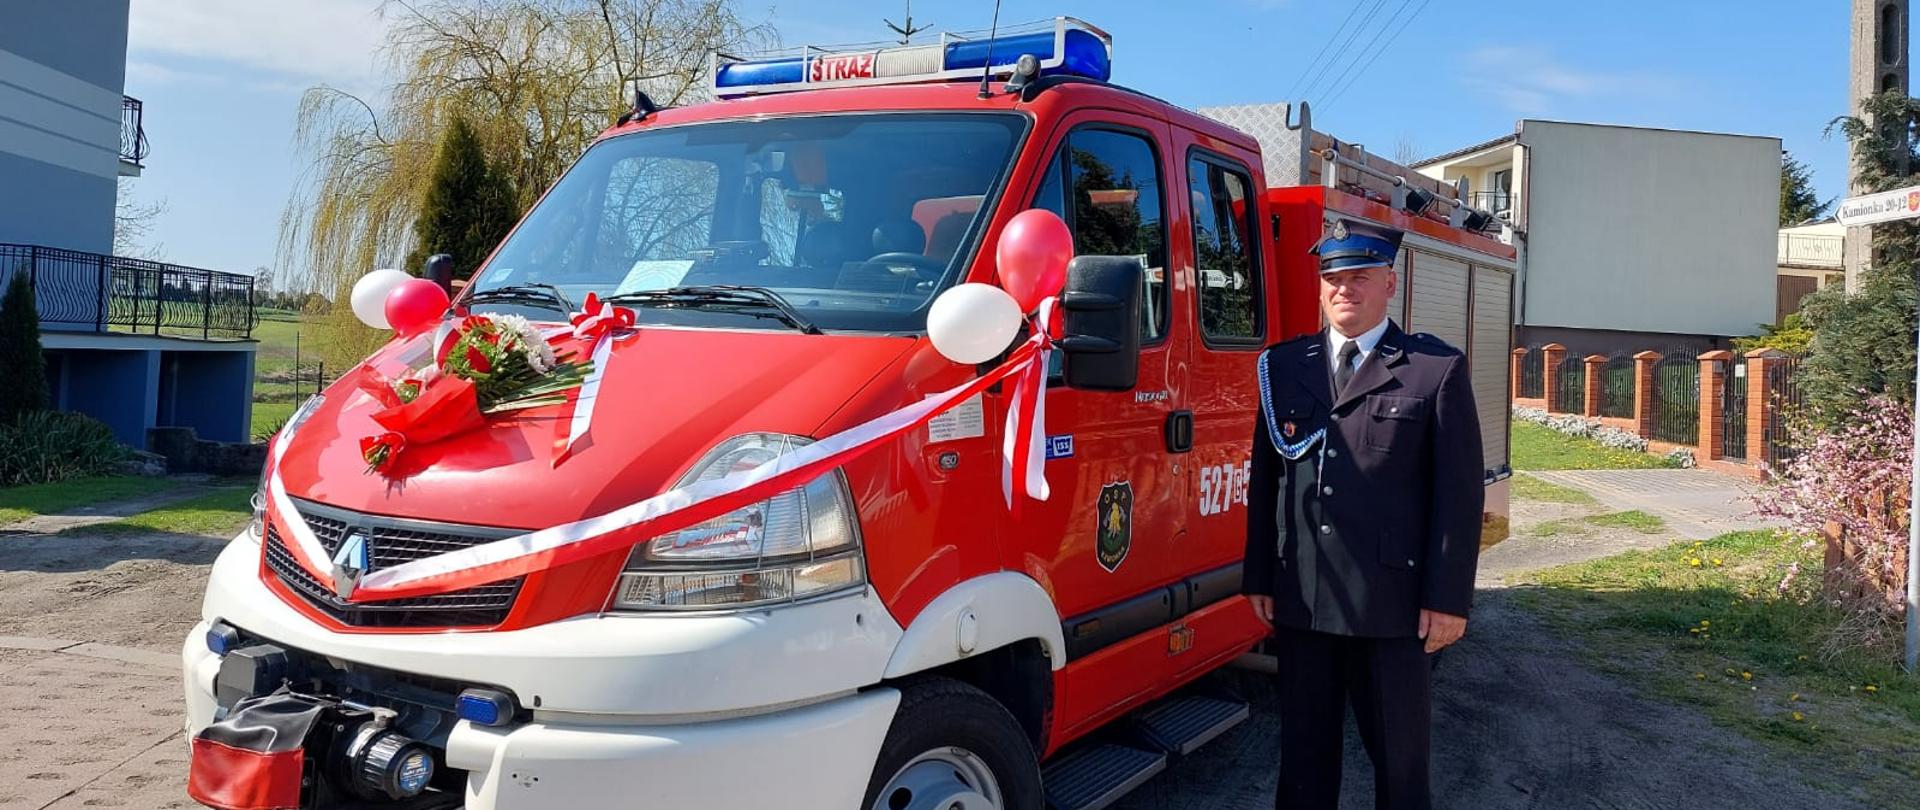 Zdjęcie przedstawia nowy pozyskany samochód pożarniczy, przepasany ozdobną szarfą z balonami. Z prawej strony stoi strażak w mundurze galowym